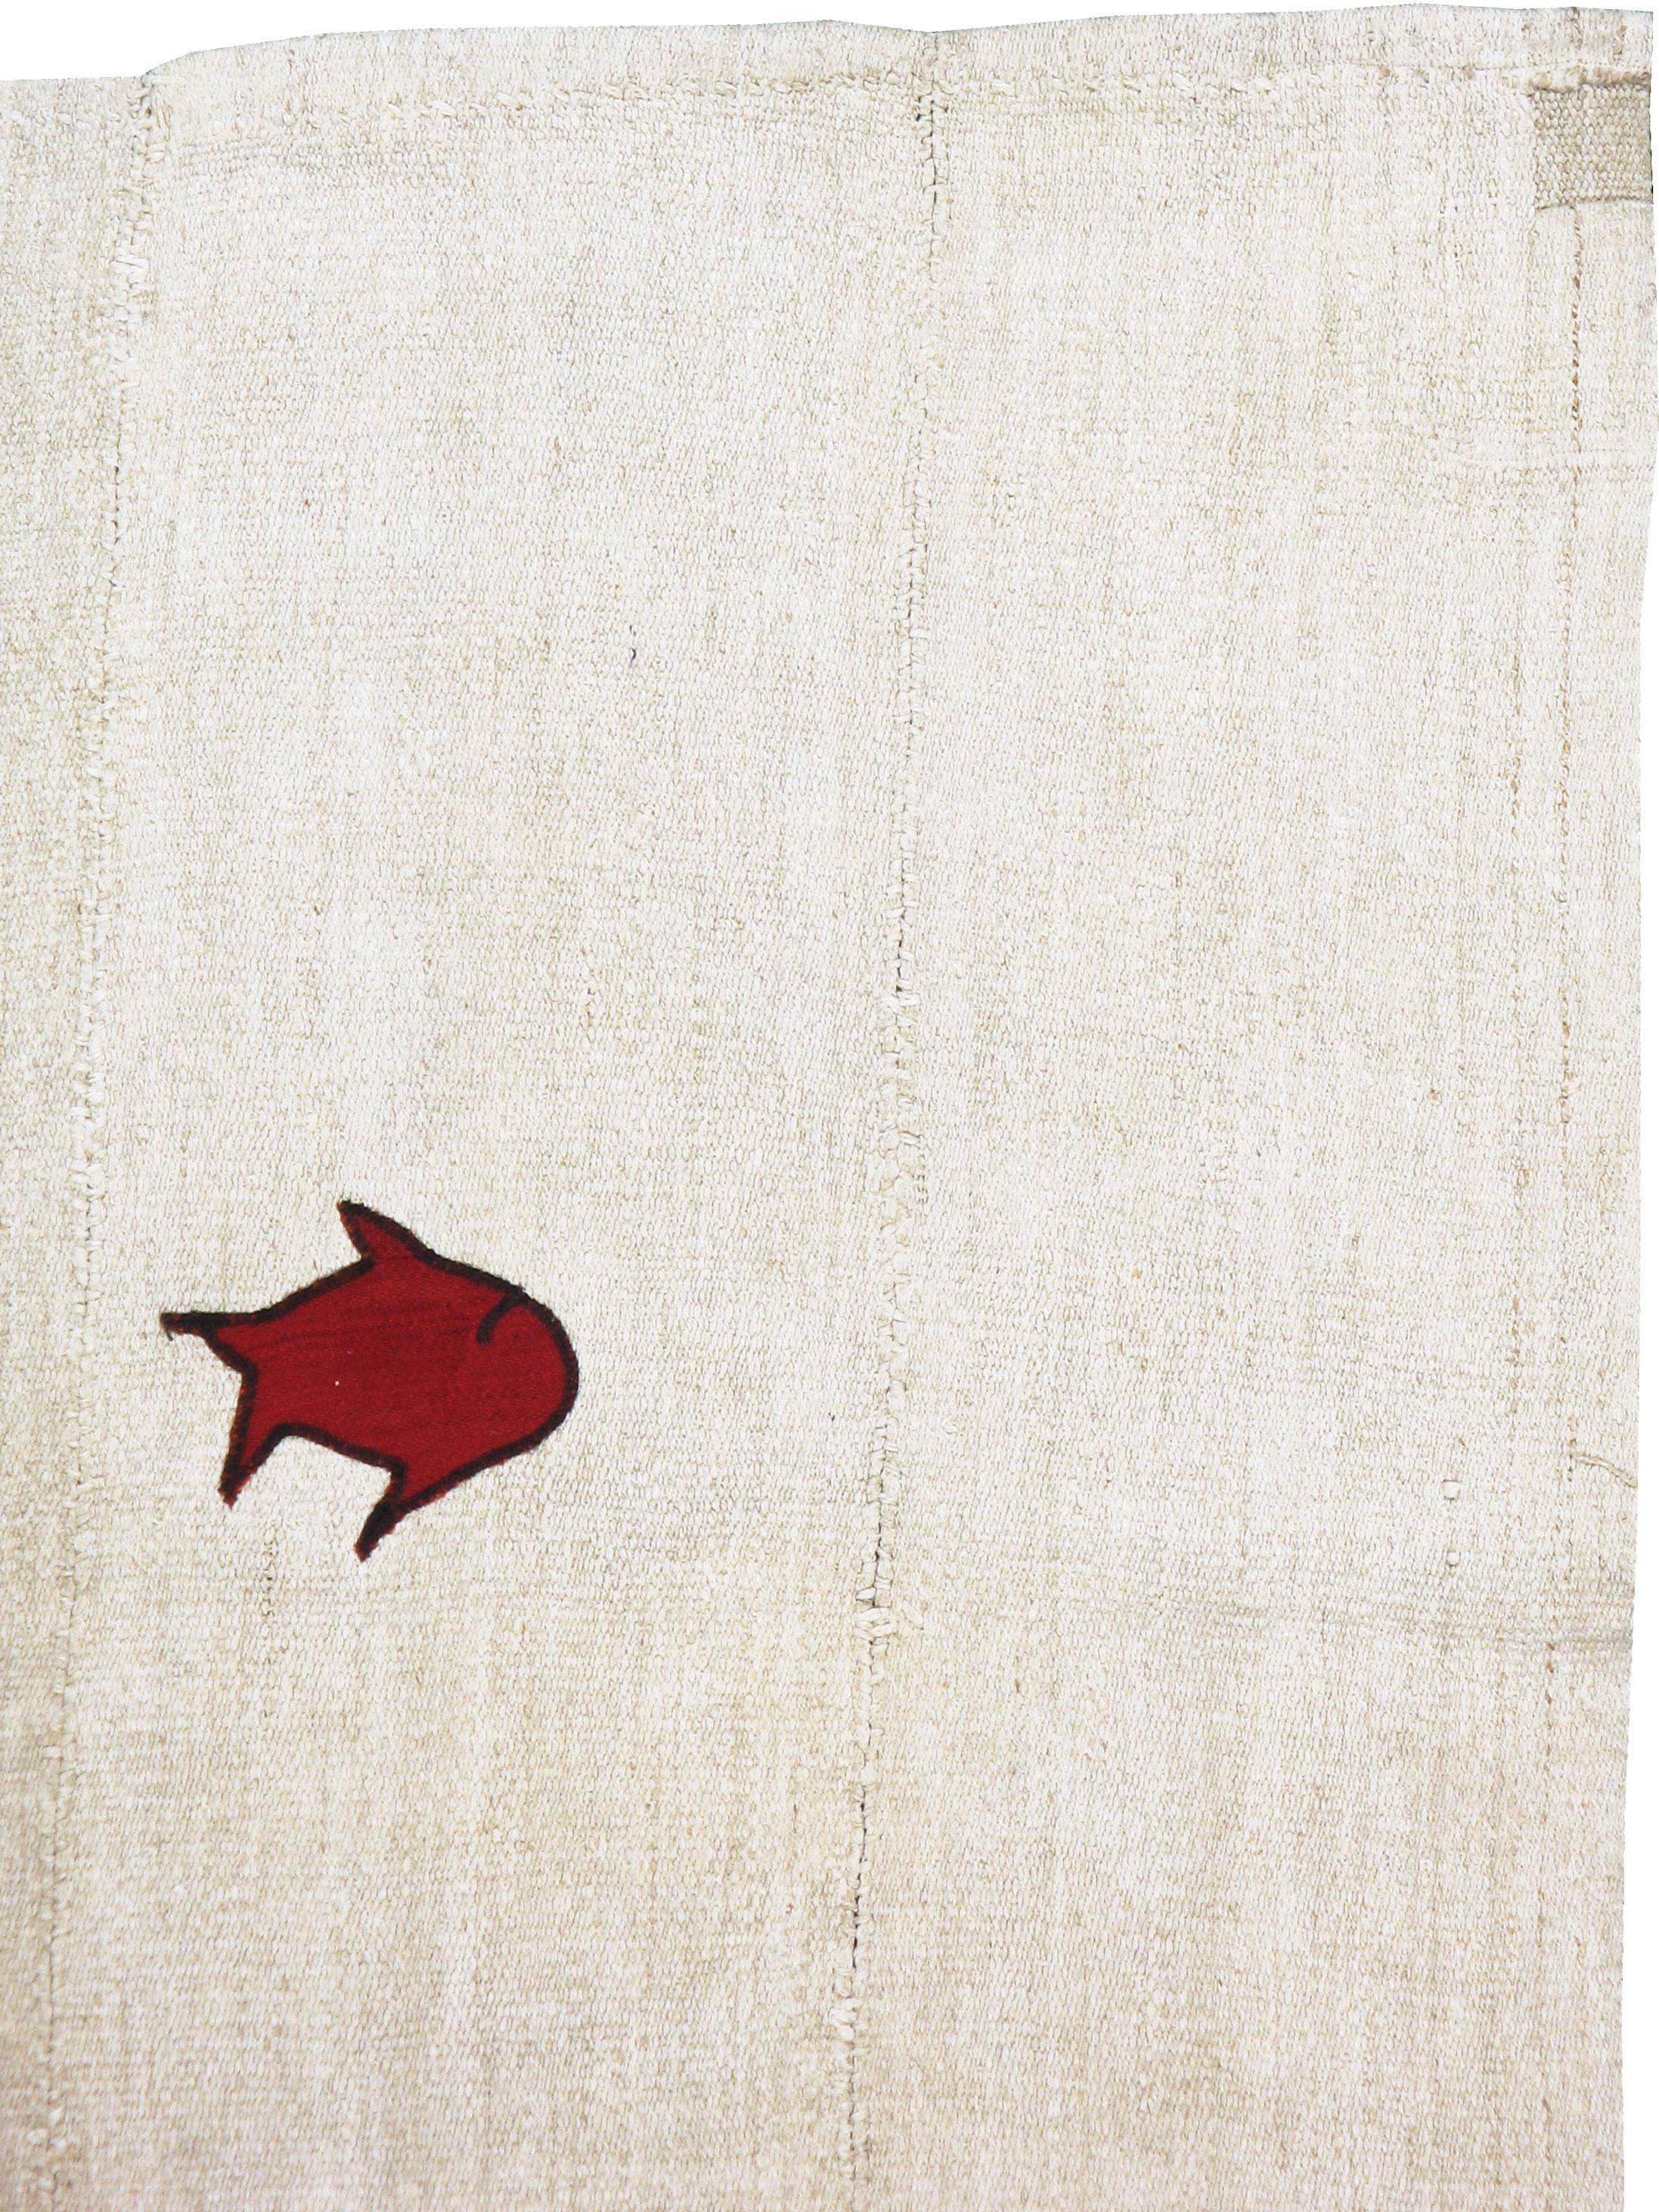 Un Kilim turc moderne du 21ème siècle. Le tapis se compose d'un Kilim vintage en chanvre comme fond blanc et de taches en relief pour former le motif. Pas de bordures, mais une mer écrue finement abrasée (stries de couleur naturelle) avec quatre